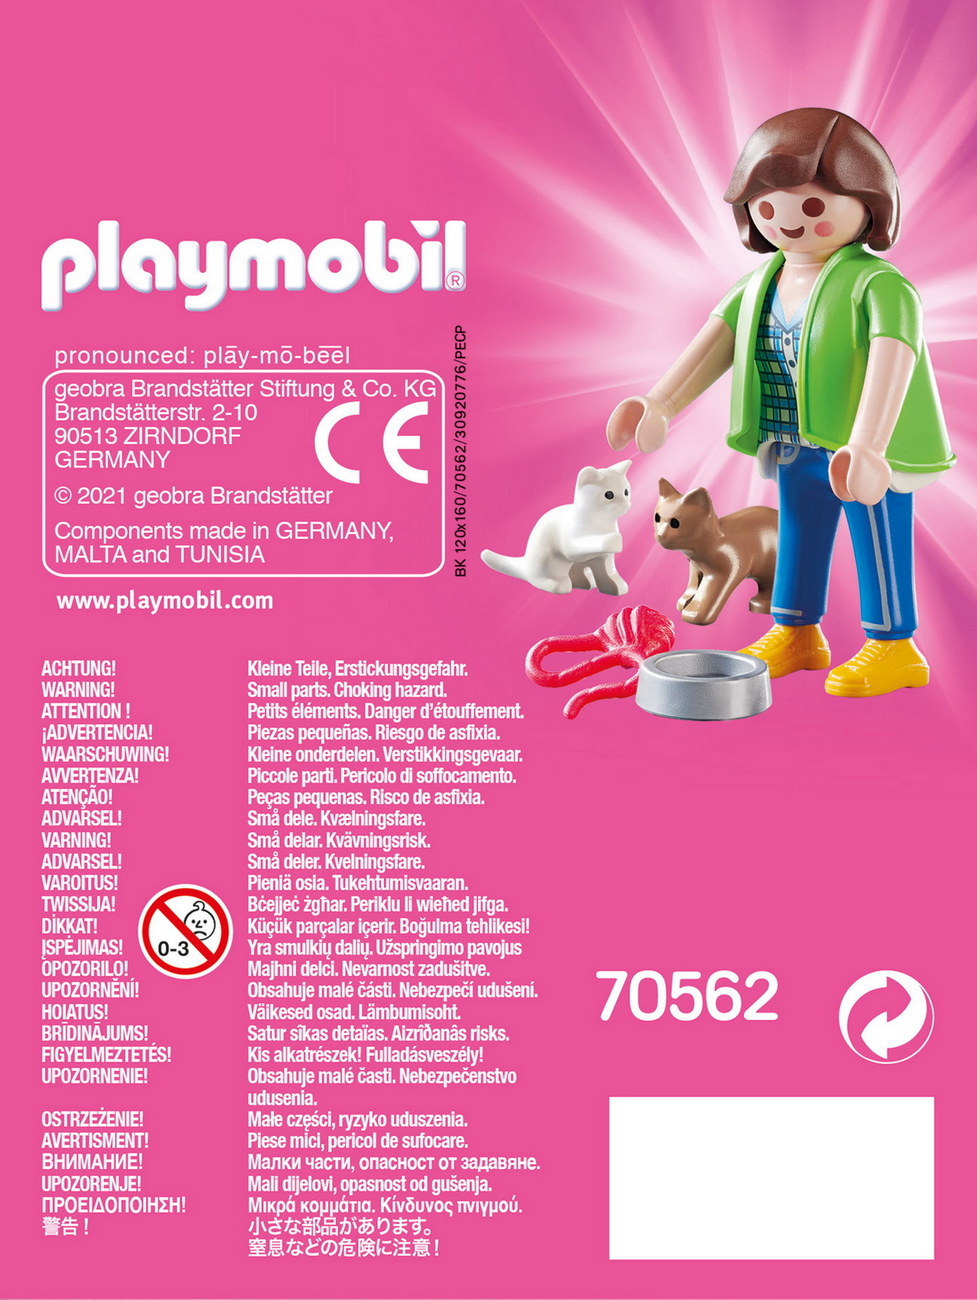 Playmobil 70562 - Frau mit Katzenbabys (PLAYMO-FRIENDS)